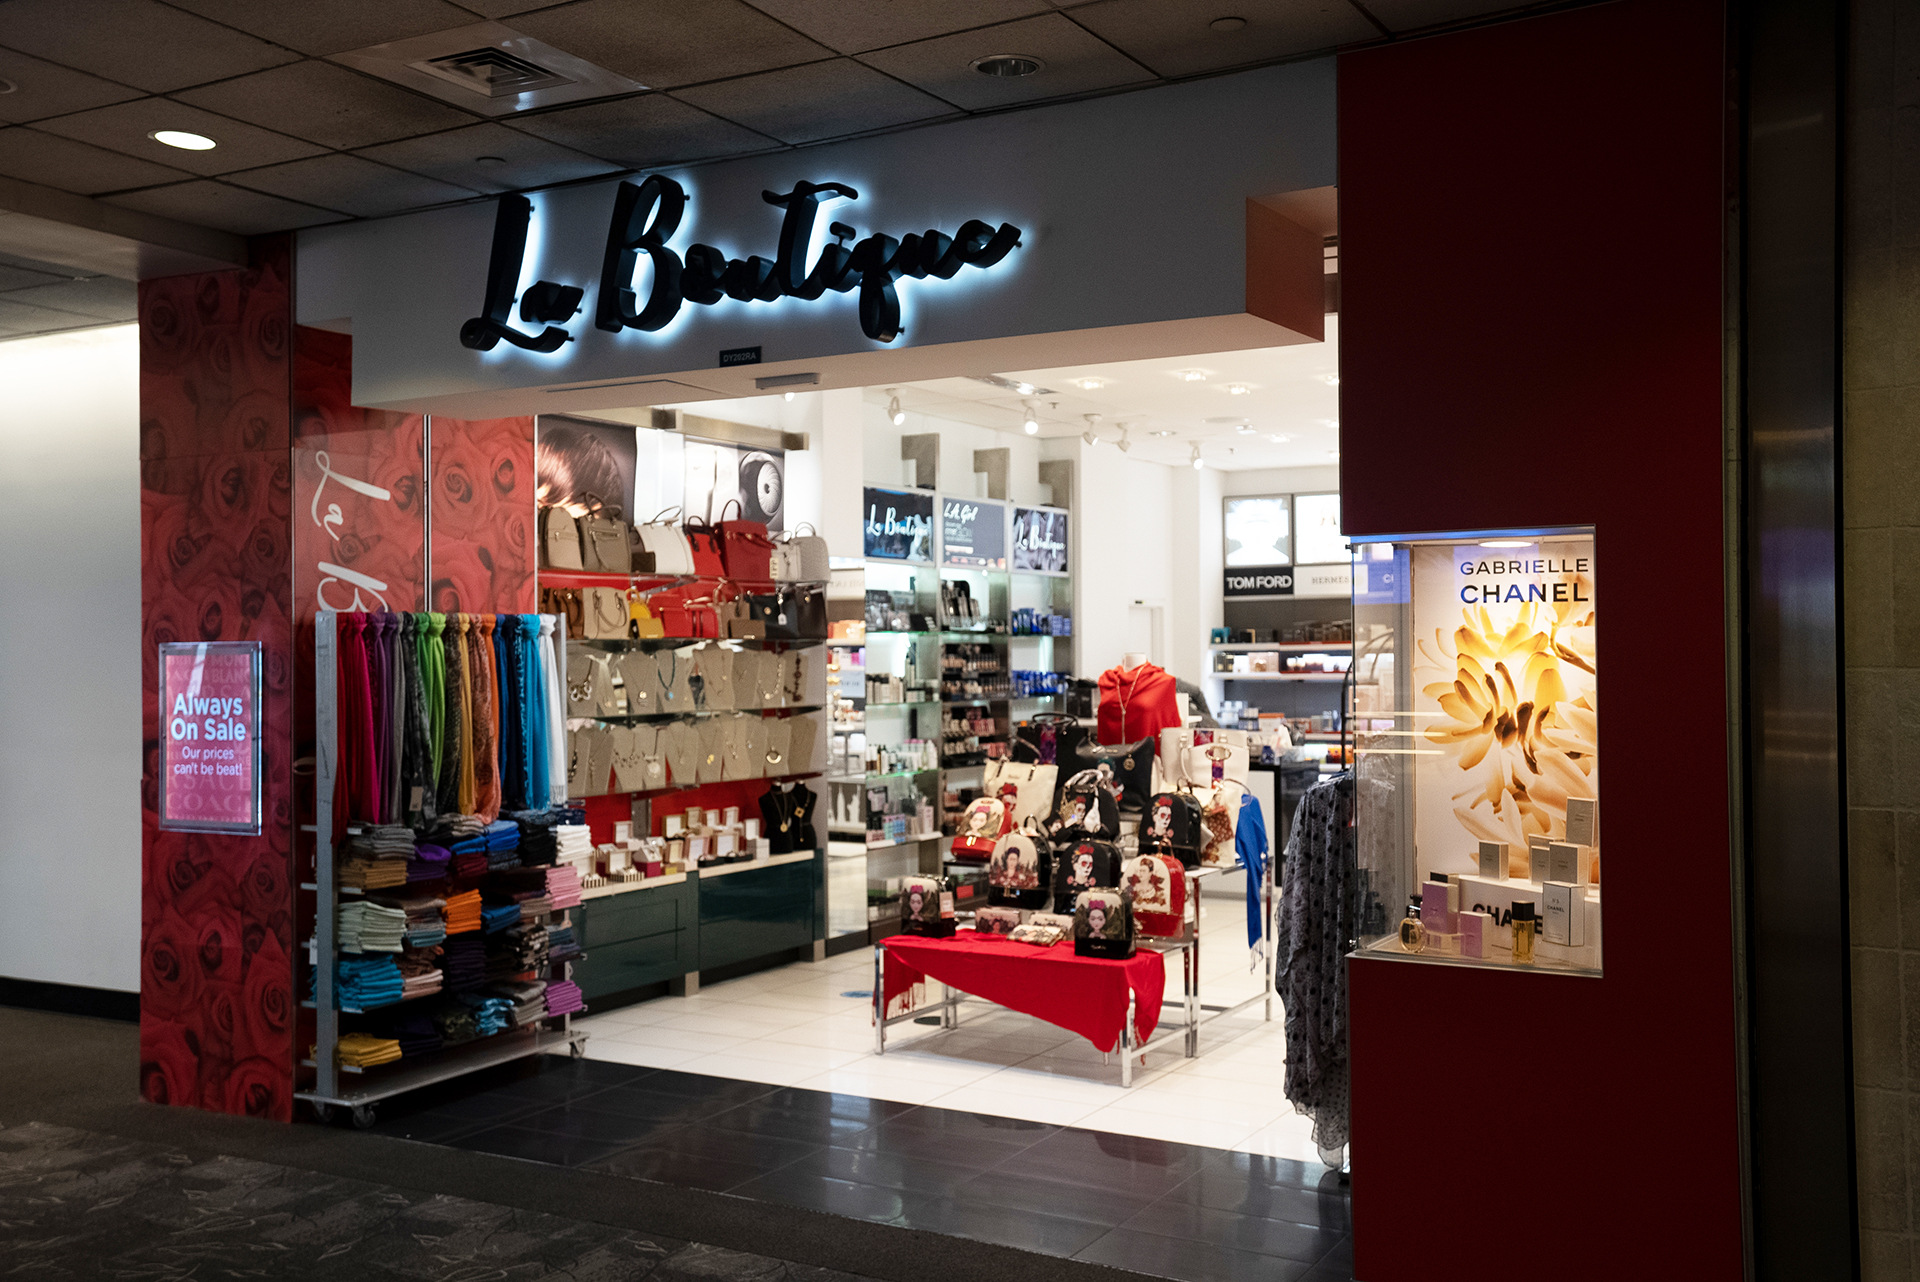 La Boutique – The Shops at BWI